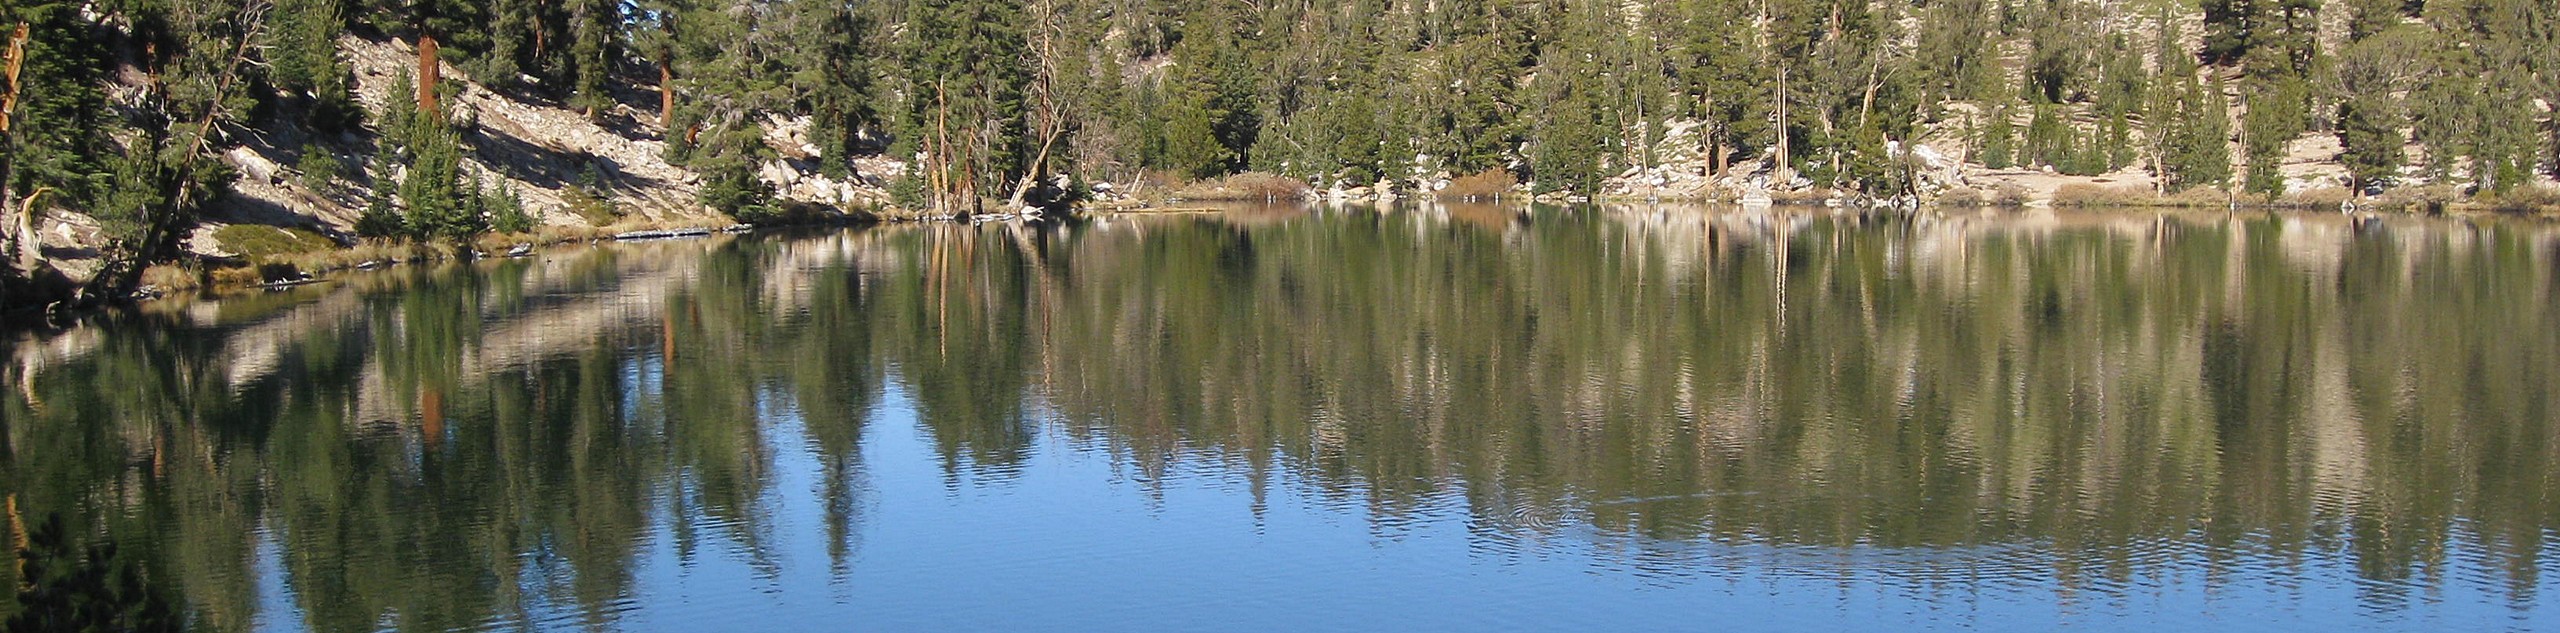 Star Lake via High Meadows Trail